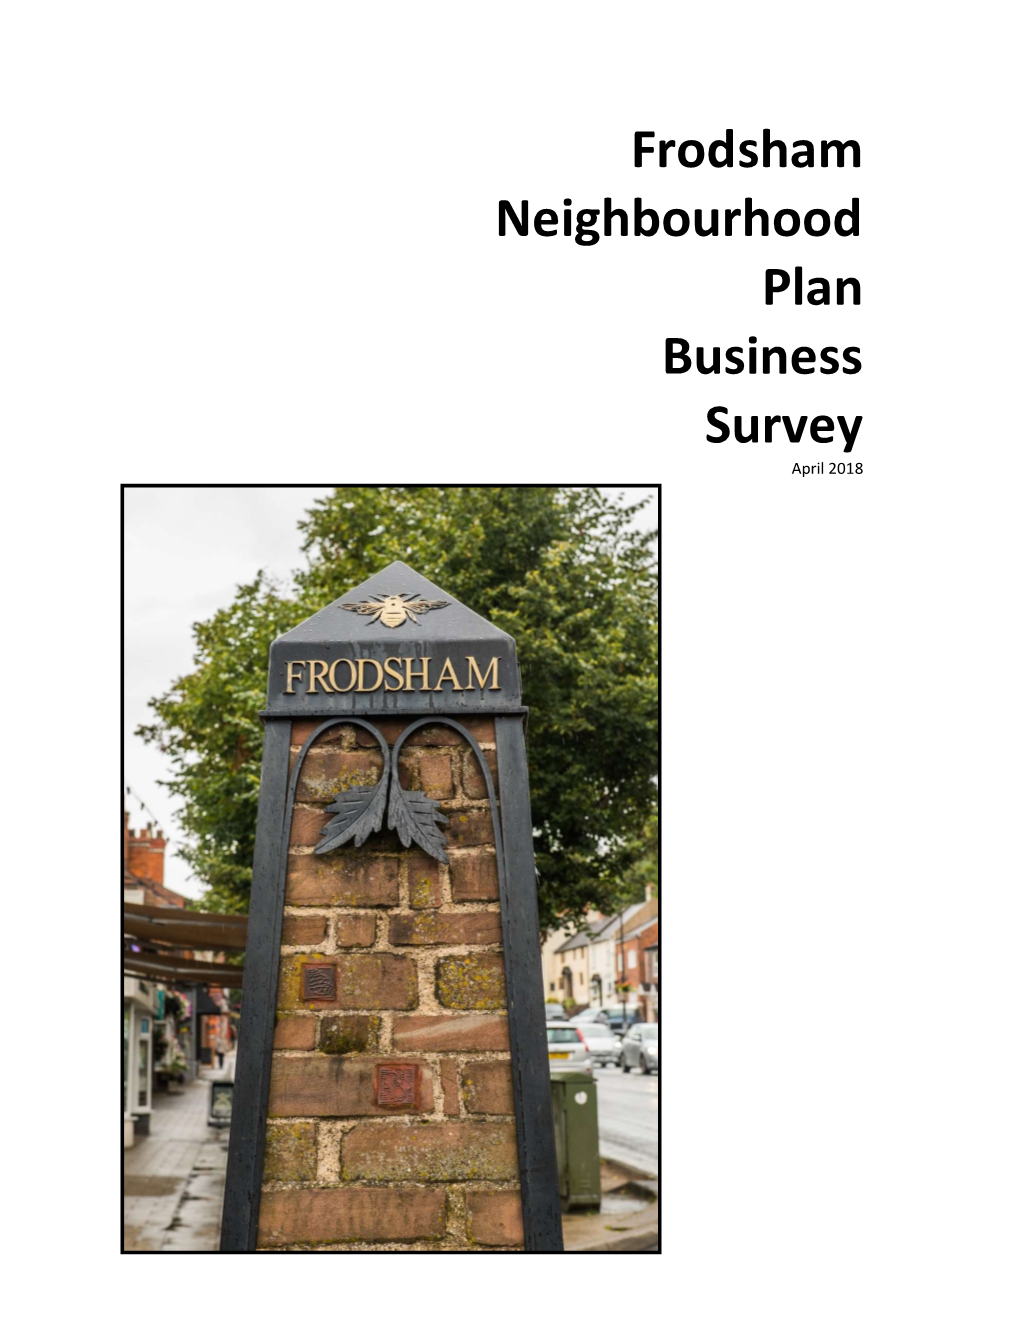 Frodsham Neighbourhood Plan Business Survey April 2018